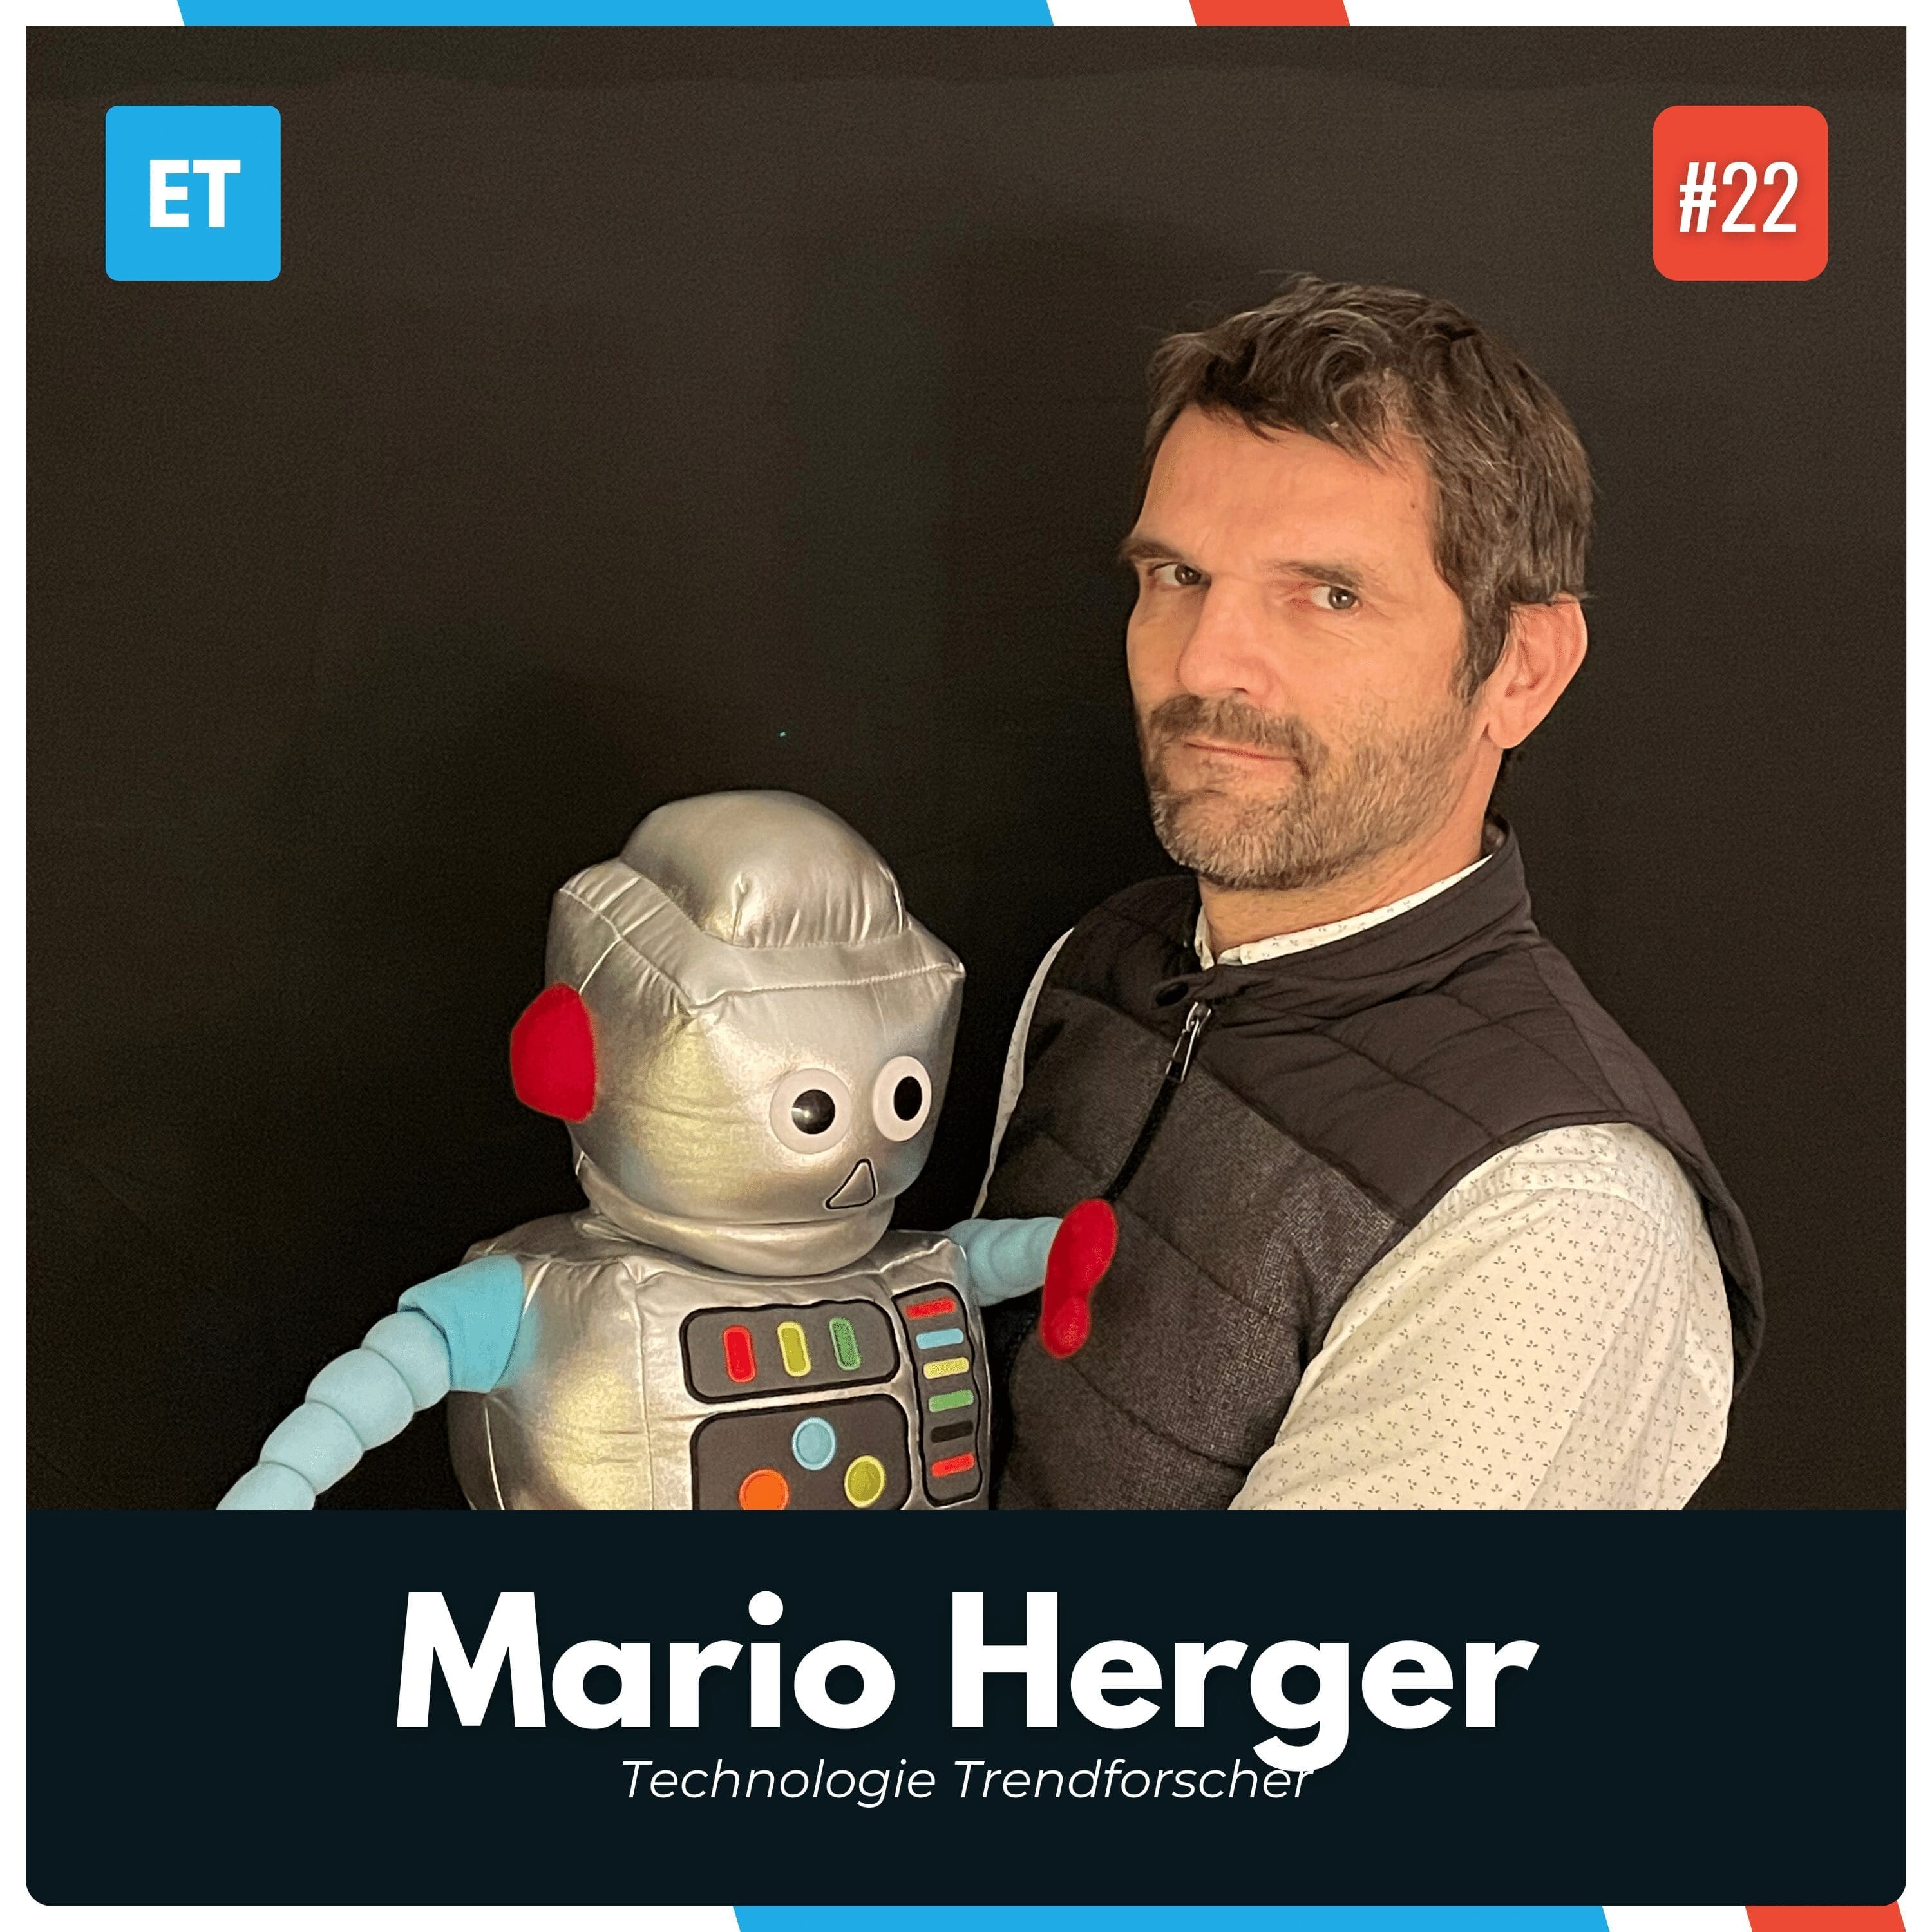 Mario Herger ist zu Gast in der letzten Podcast Folge des Jahres 2023 und er diskutiert im Exciting Tech Podcast die aktuellen Technologietrends, die Bedeutung der KI, die Unterschiede zwischen den USA und Europa in der Innovationskultur und gibt einen Ausblick auf die Zukunft der Technologie.